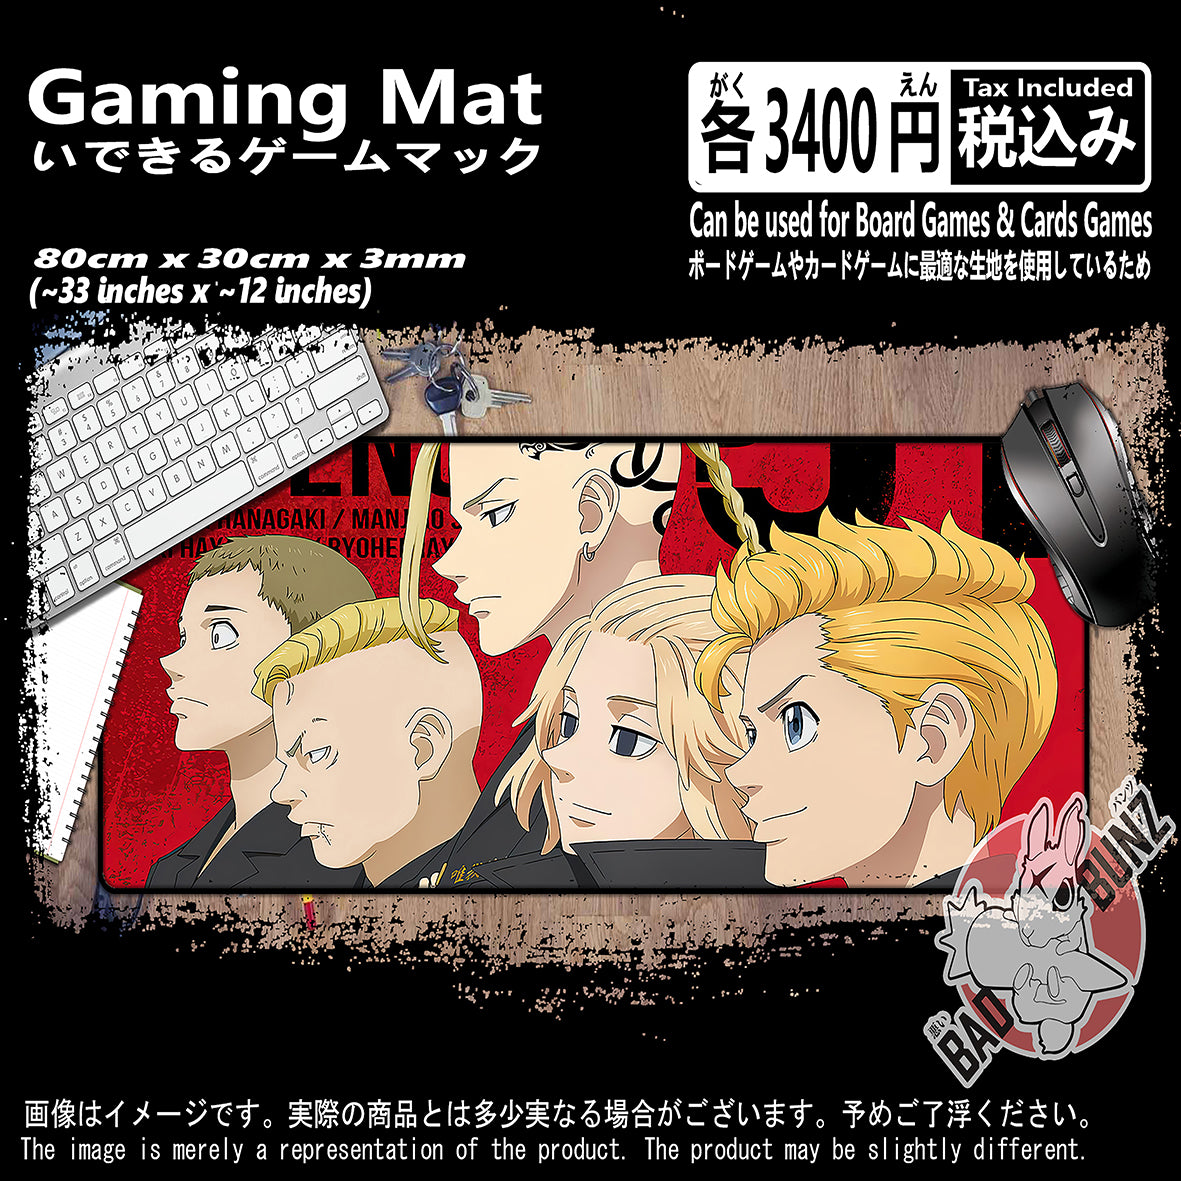 (AN-TKR-01) Tokyo Revenger Anime 800mm x 300mm Gaming Play Mat